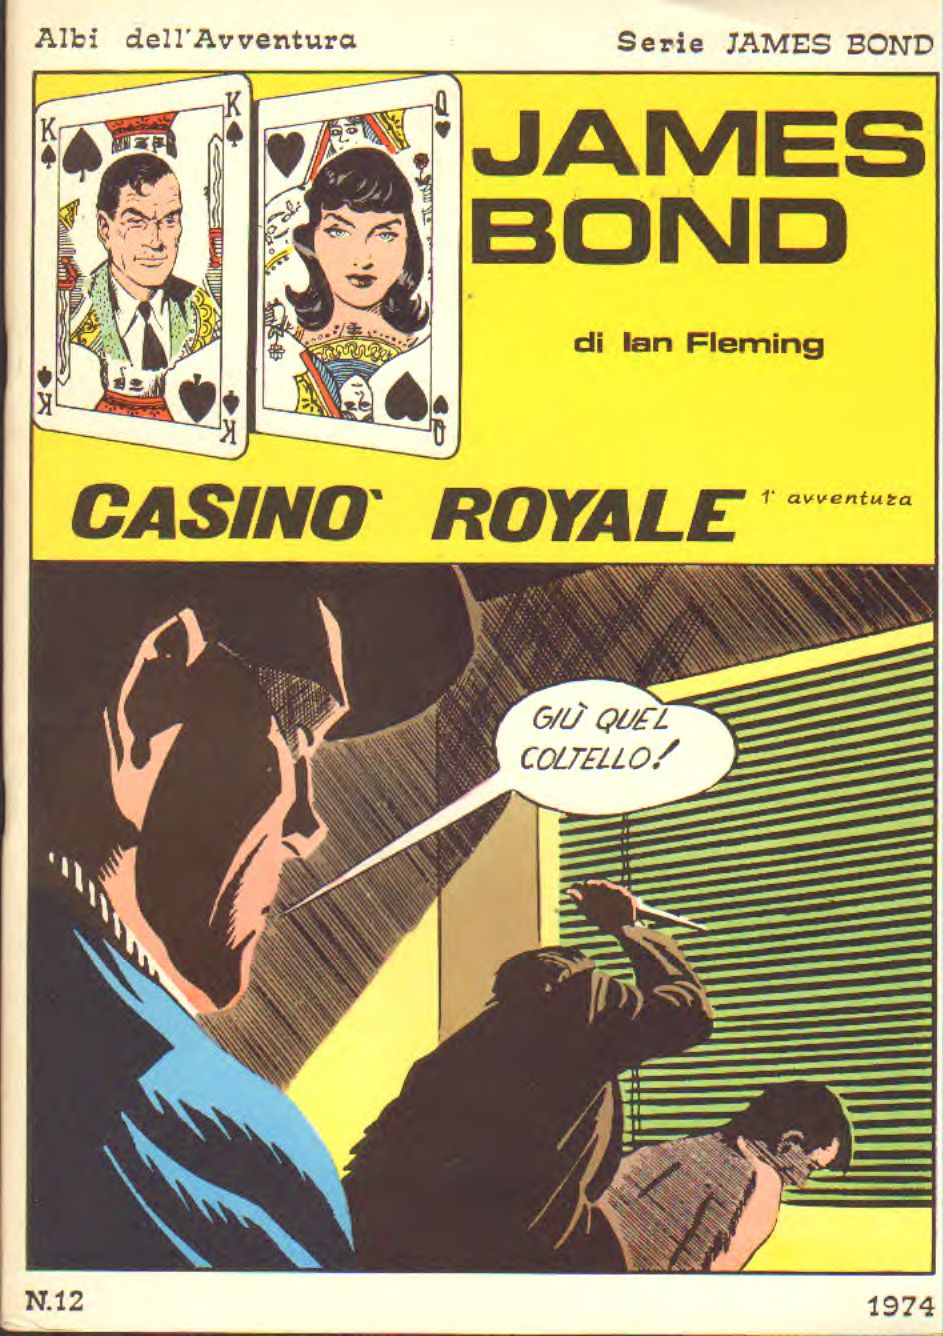 Albi dell'avventura - James Bond I serie n. 1